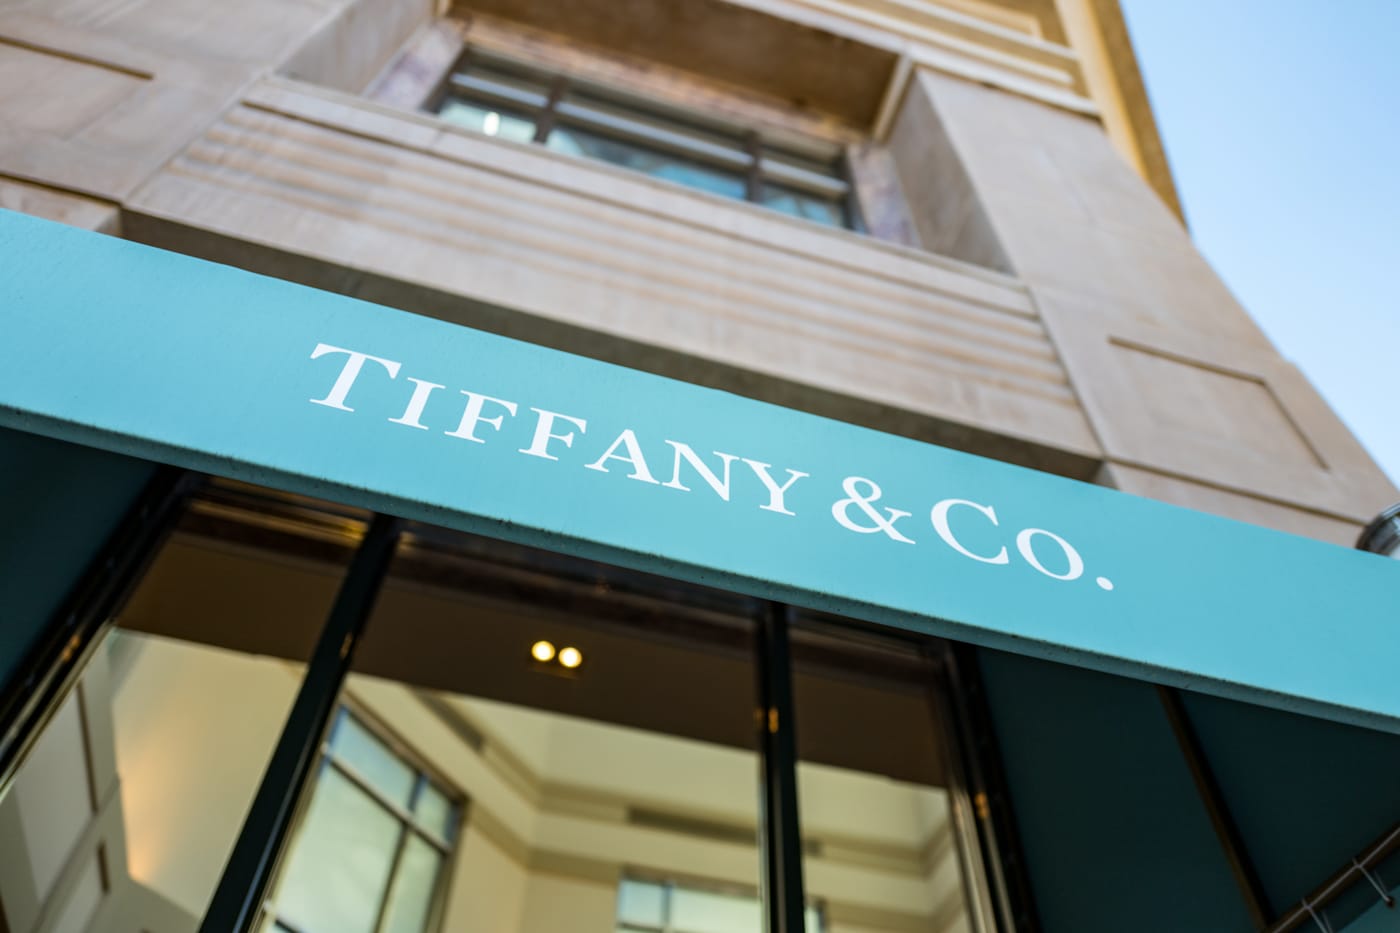 tiffany & co sales